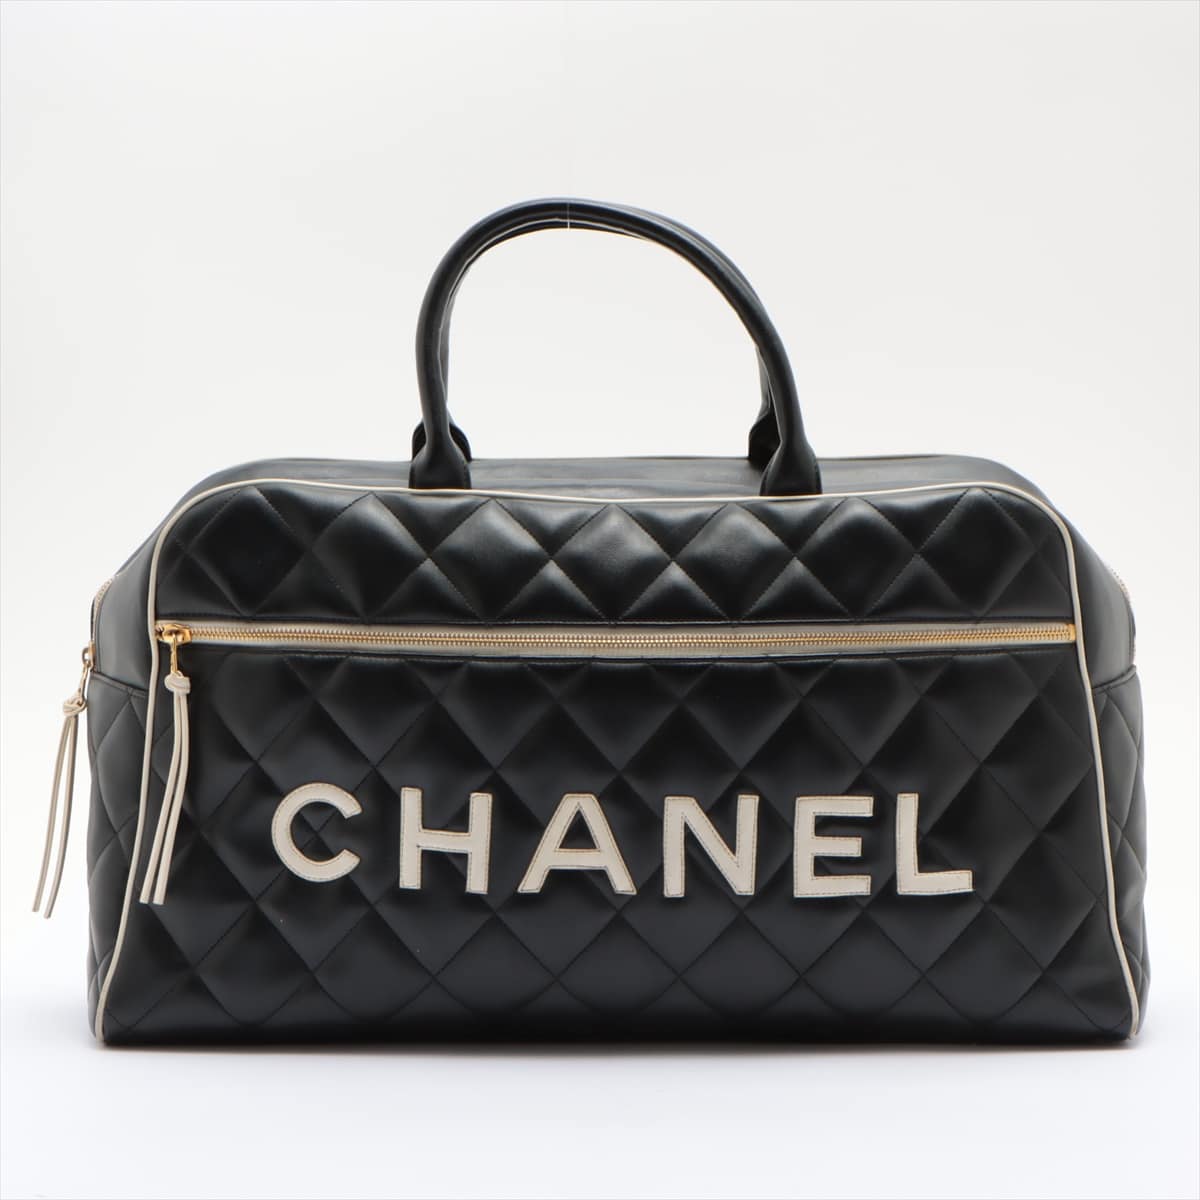 Chanel Matelasse Leather Boston bag Logo Black Gold Metal fittings 3XXXXXX